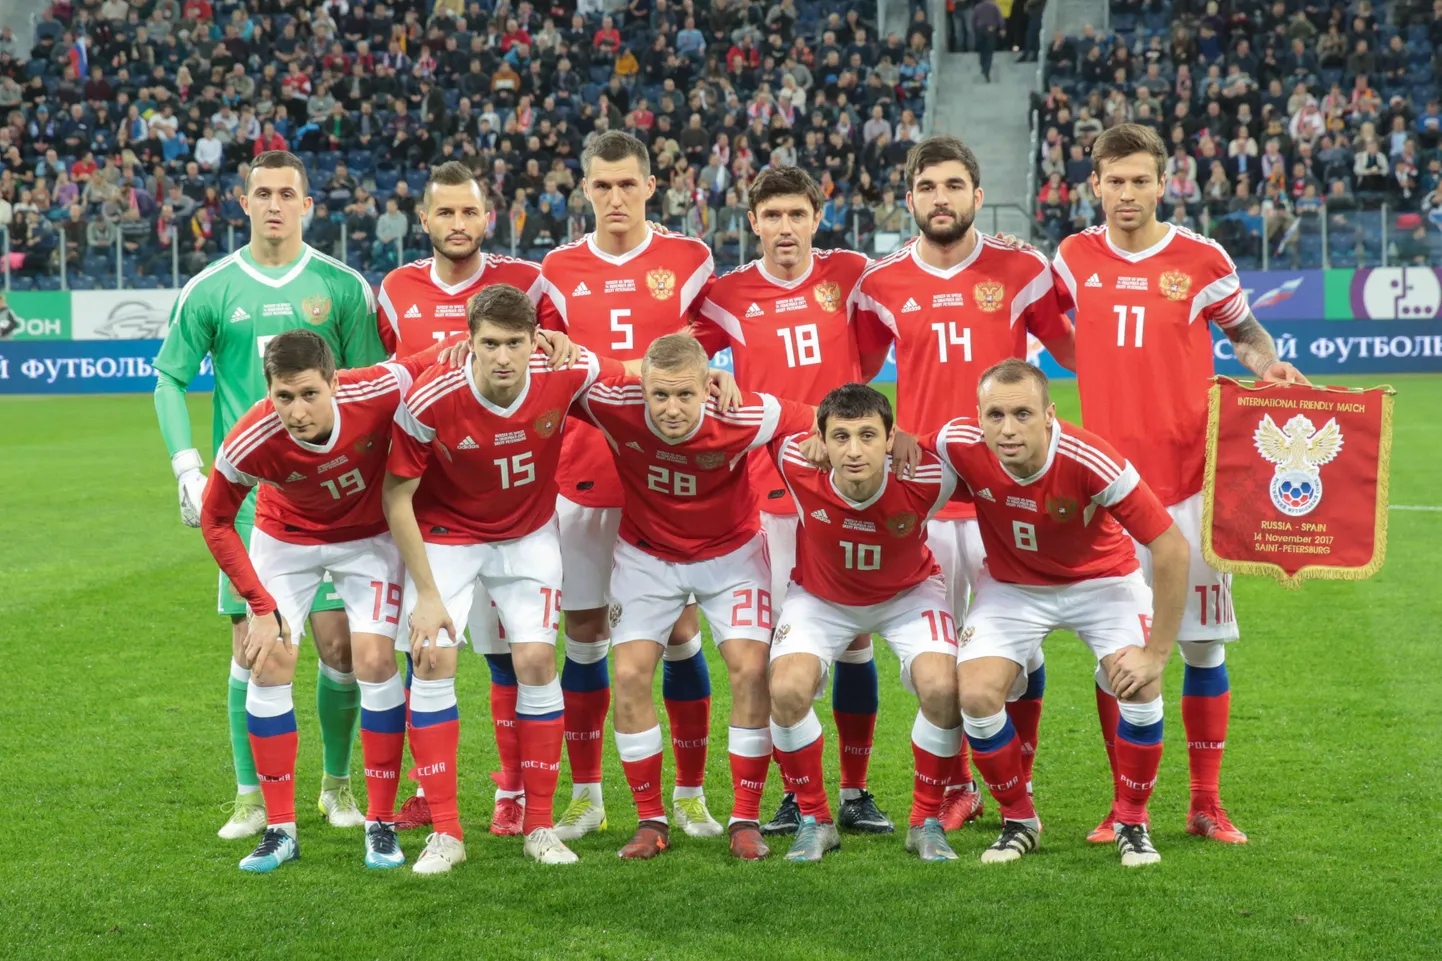 Venemaa jalgpallikoondislased 2017. aastal. Foto on illustreeriv.